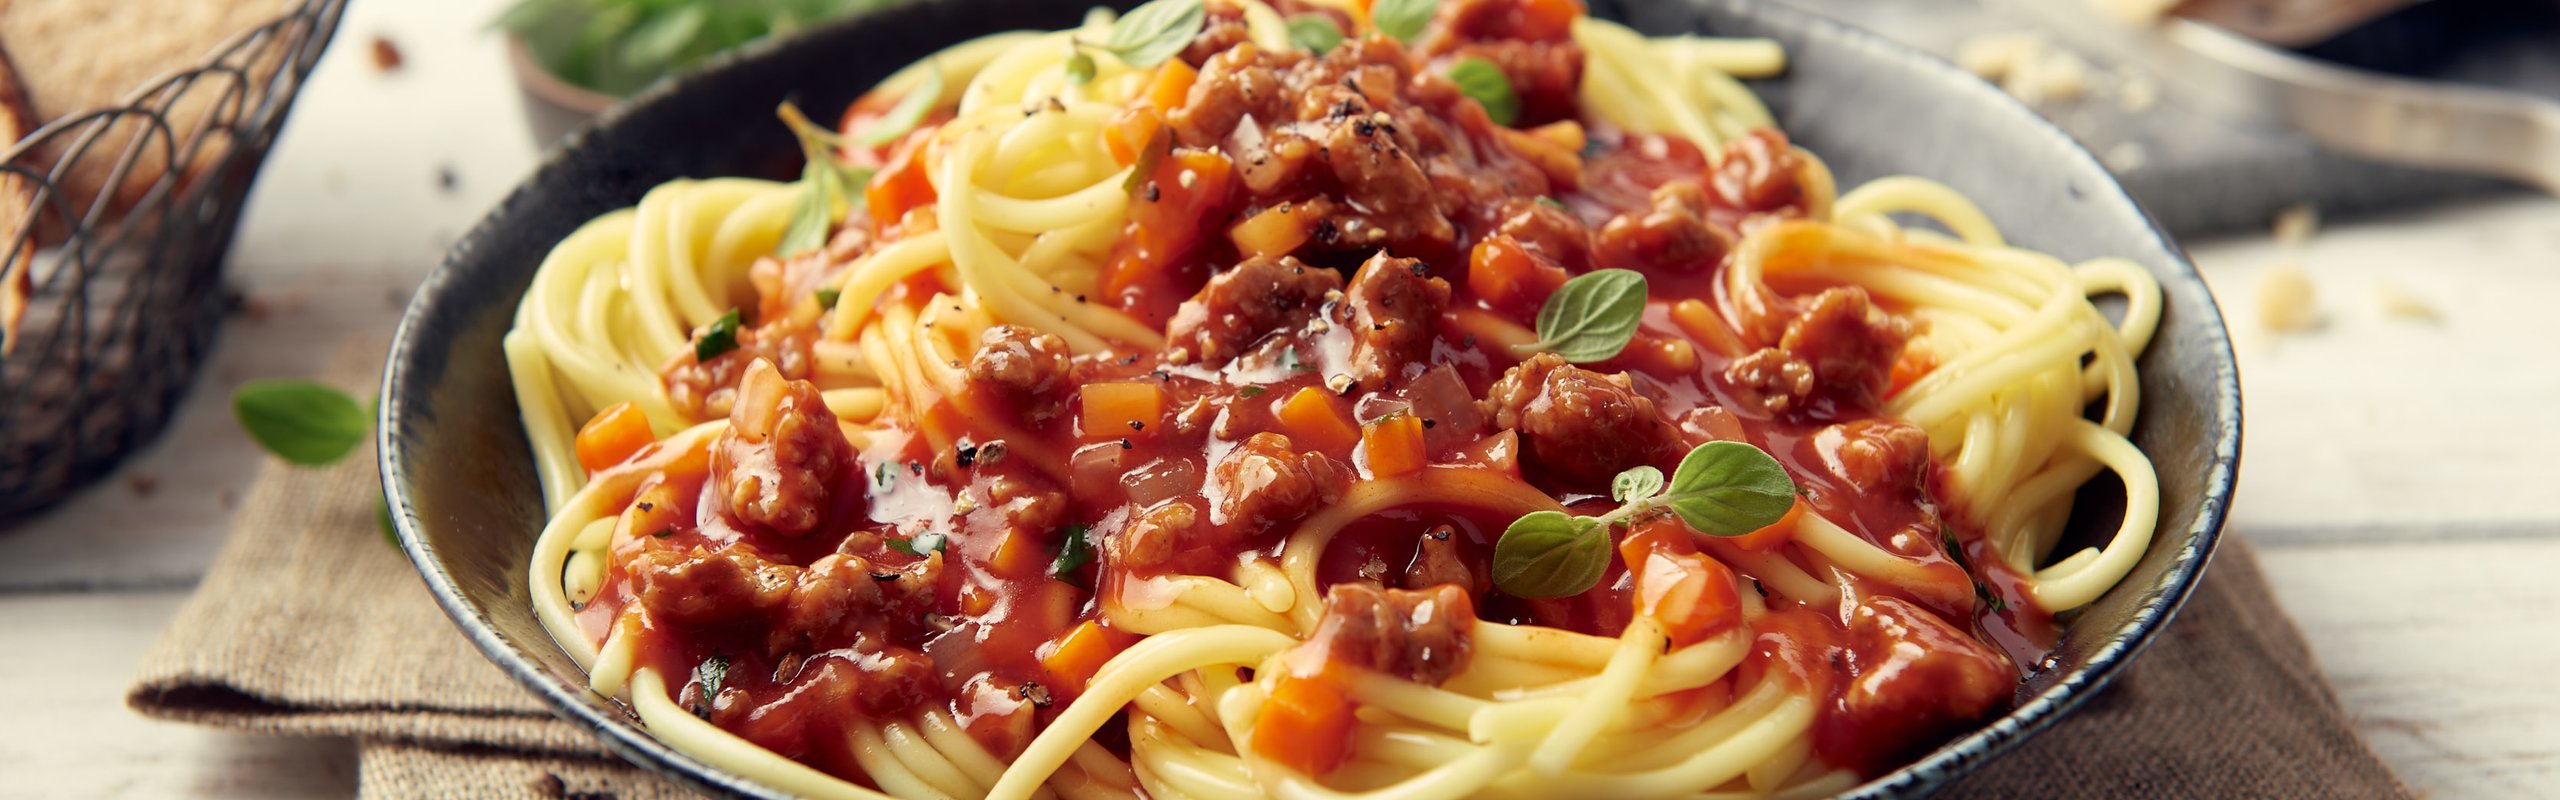 Spaghetti mit Bautz'ner Fixsoße Bolognese